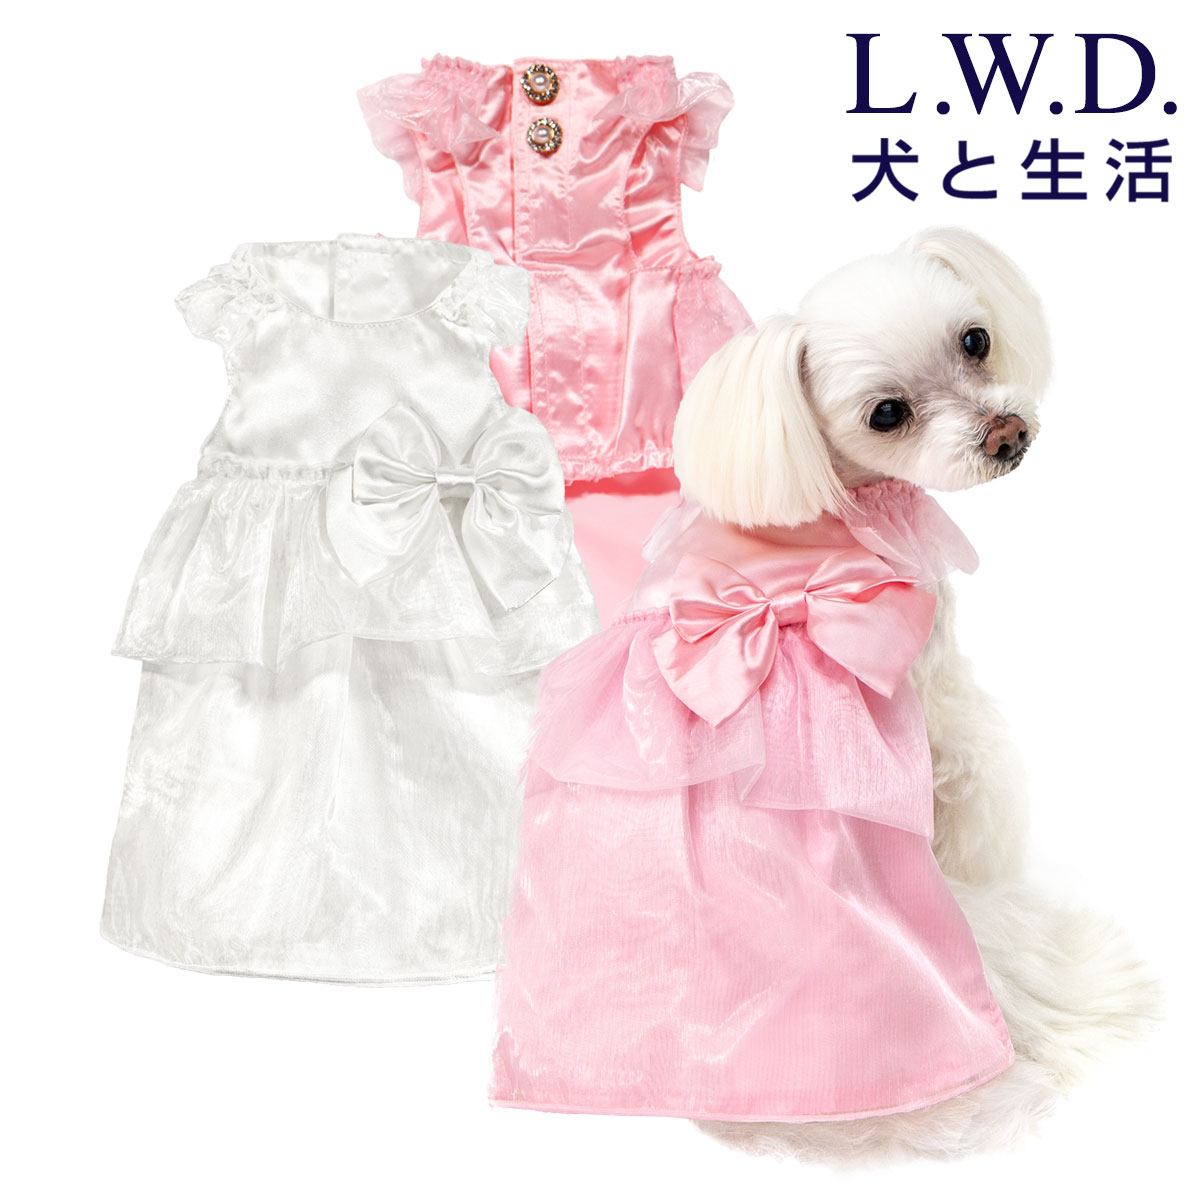 パーティードレス犬と生活 一流の品質 L.W.D 送料無料犬服 別倉庫からの配送 犬 服 フォーマル お呼ばれ パーティー 結婚式 ドレス